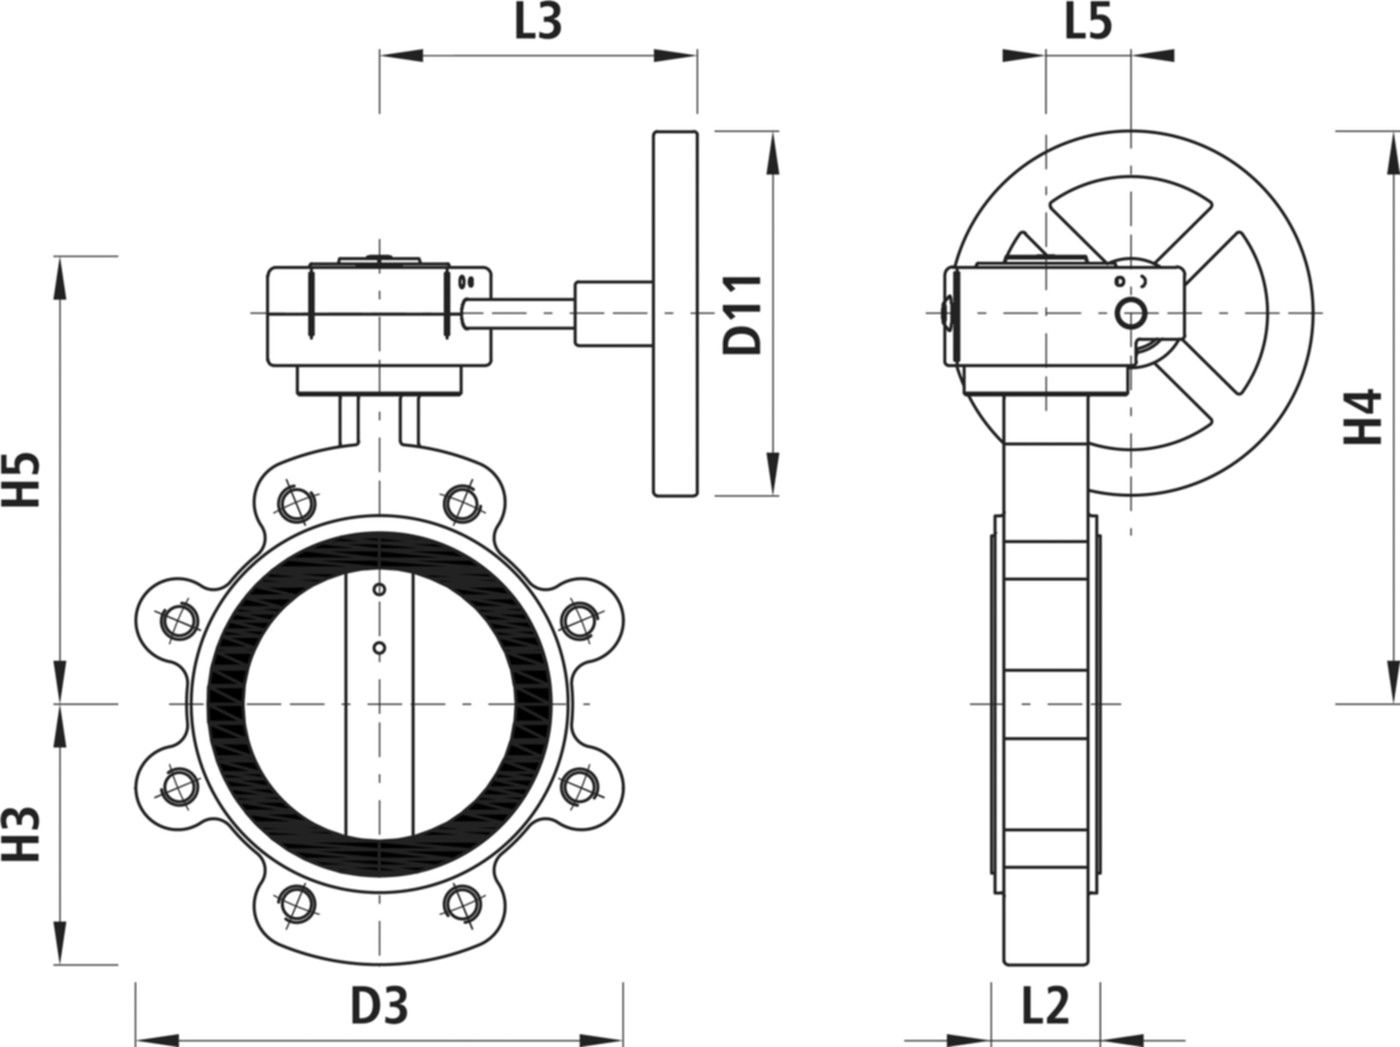 Absperrklappe mit Getriebe Typ LT 9937 für Gas DN 40 PN 16 - Hawle Absperrklappen